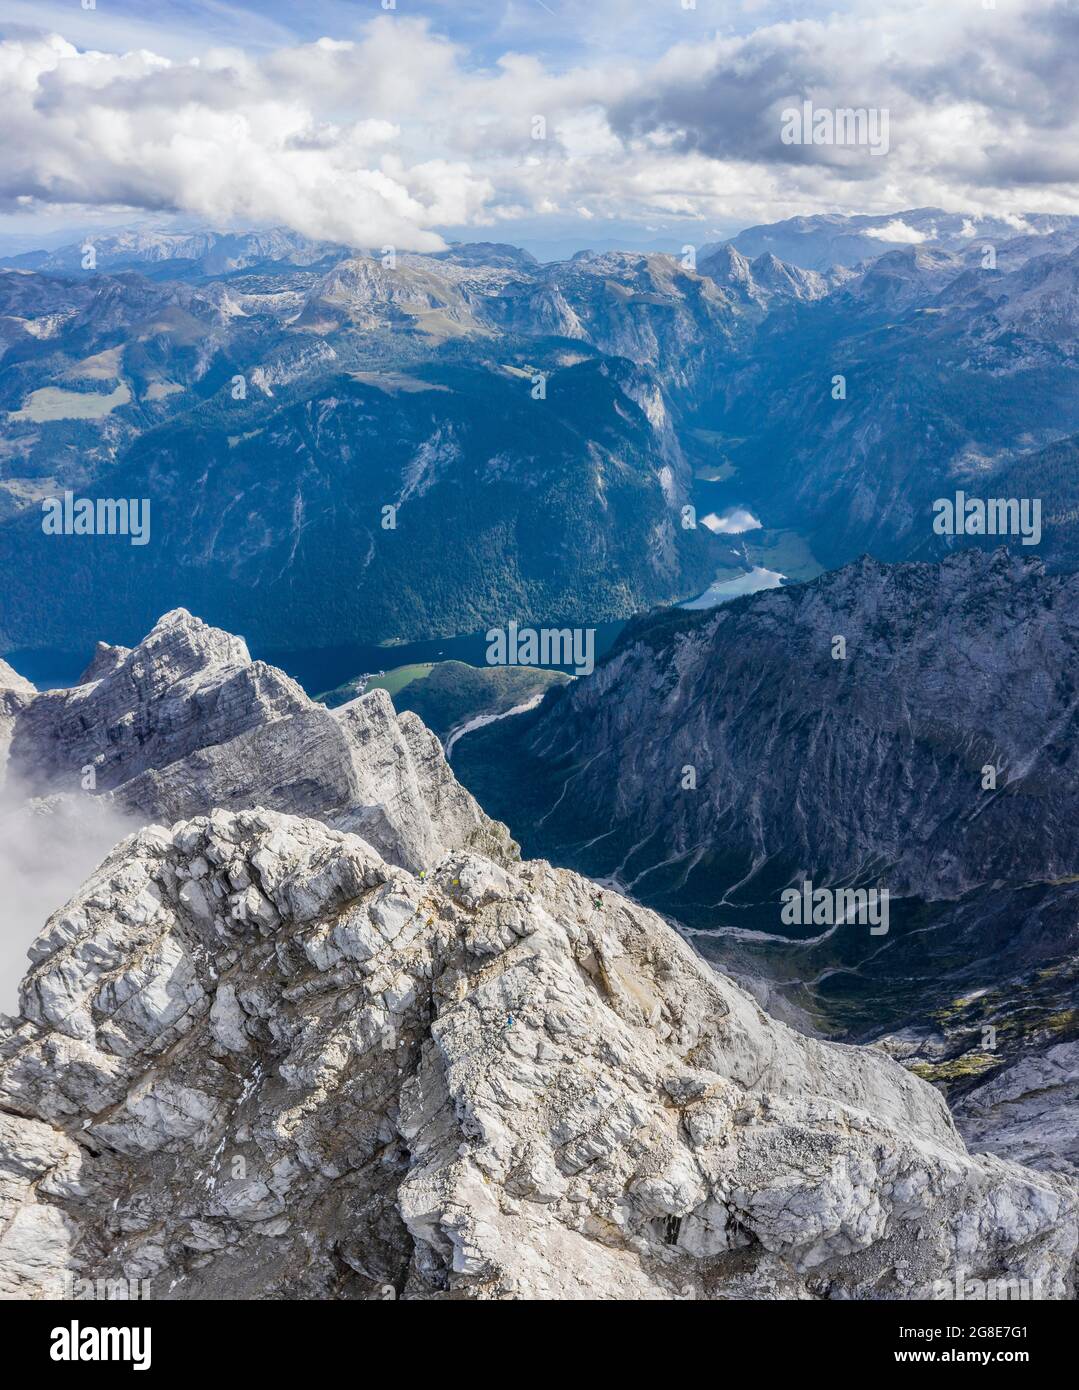 Alpenpanorama vom Watzmann Mittelgipfel mit Königssee, Berchtesgadener Alpen, Berchtesgadener Land, Oberbayern, Bayern, Deutschland Stockfoto